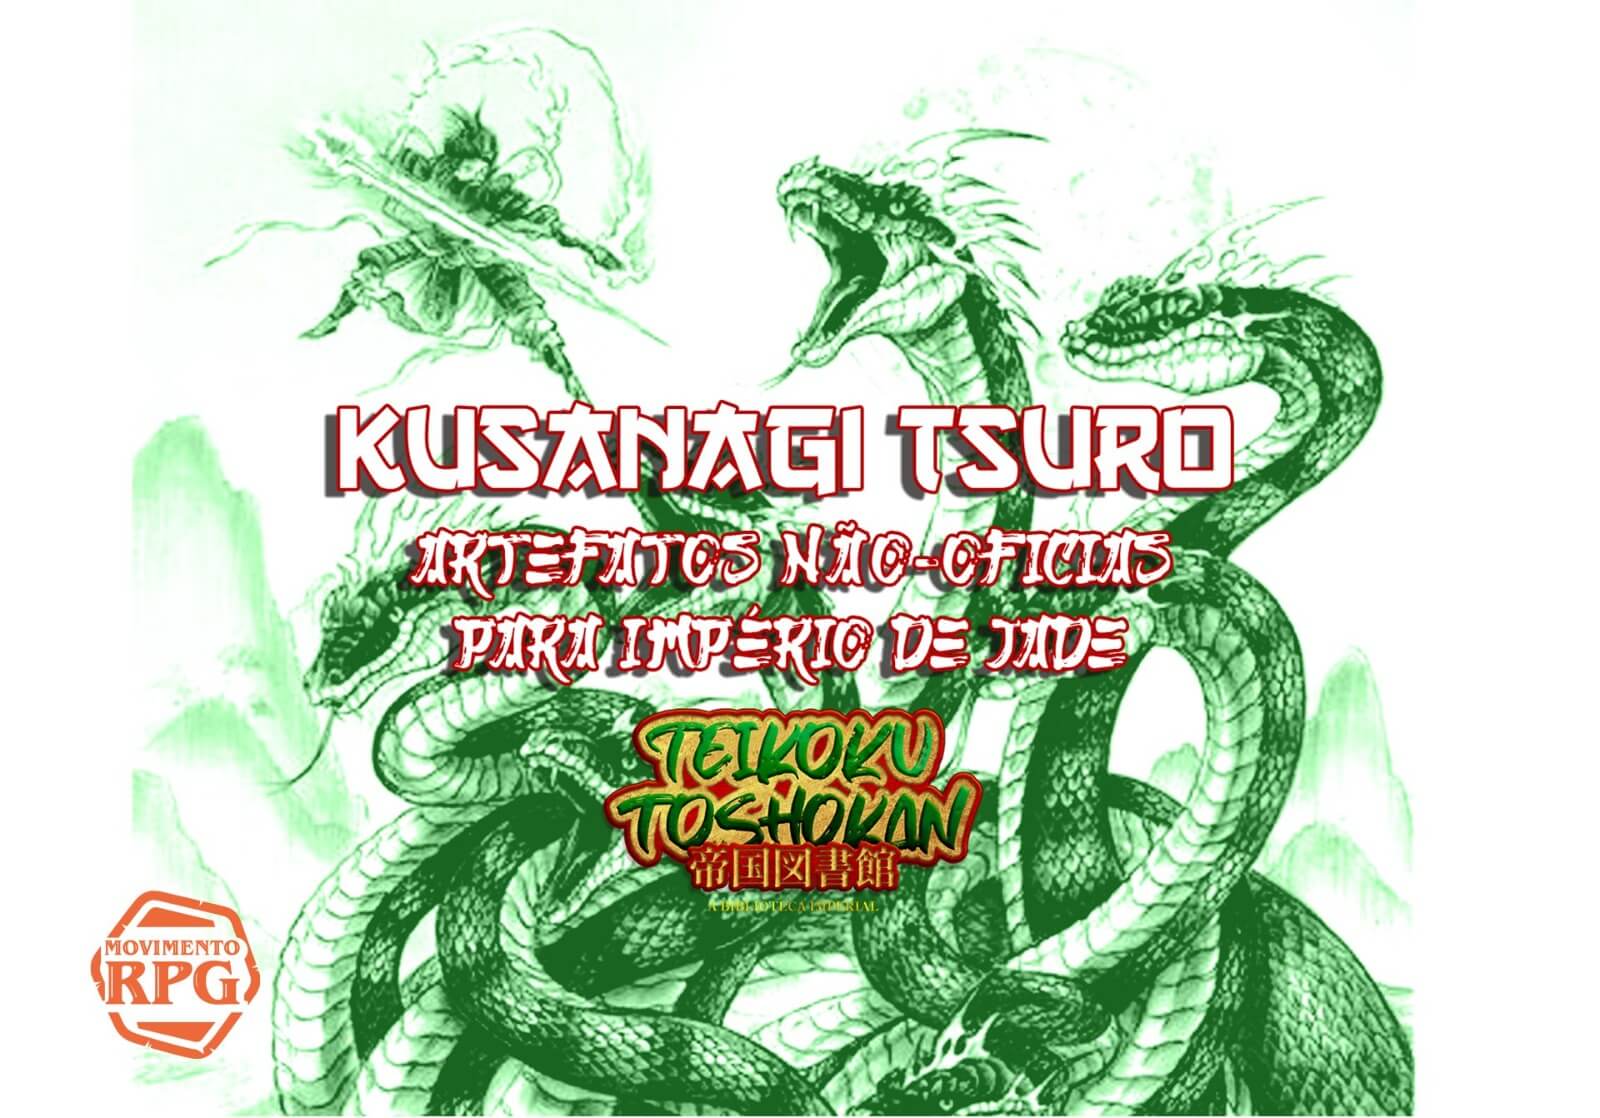 Kusanagi Tsuro – Artefatos Não-Oficias De Império de Jade – Teikoku Toshokan